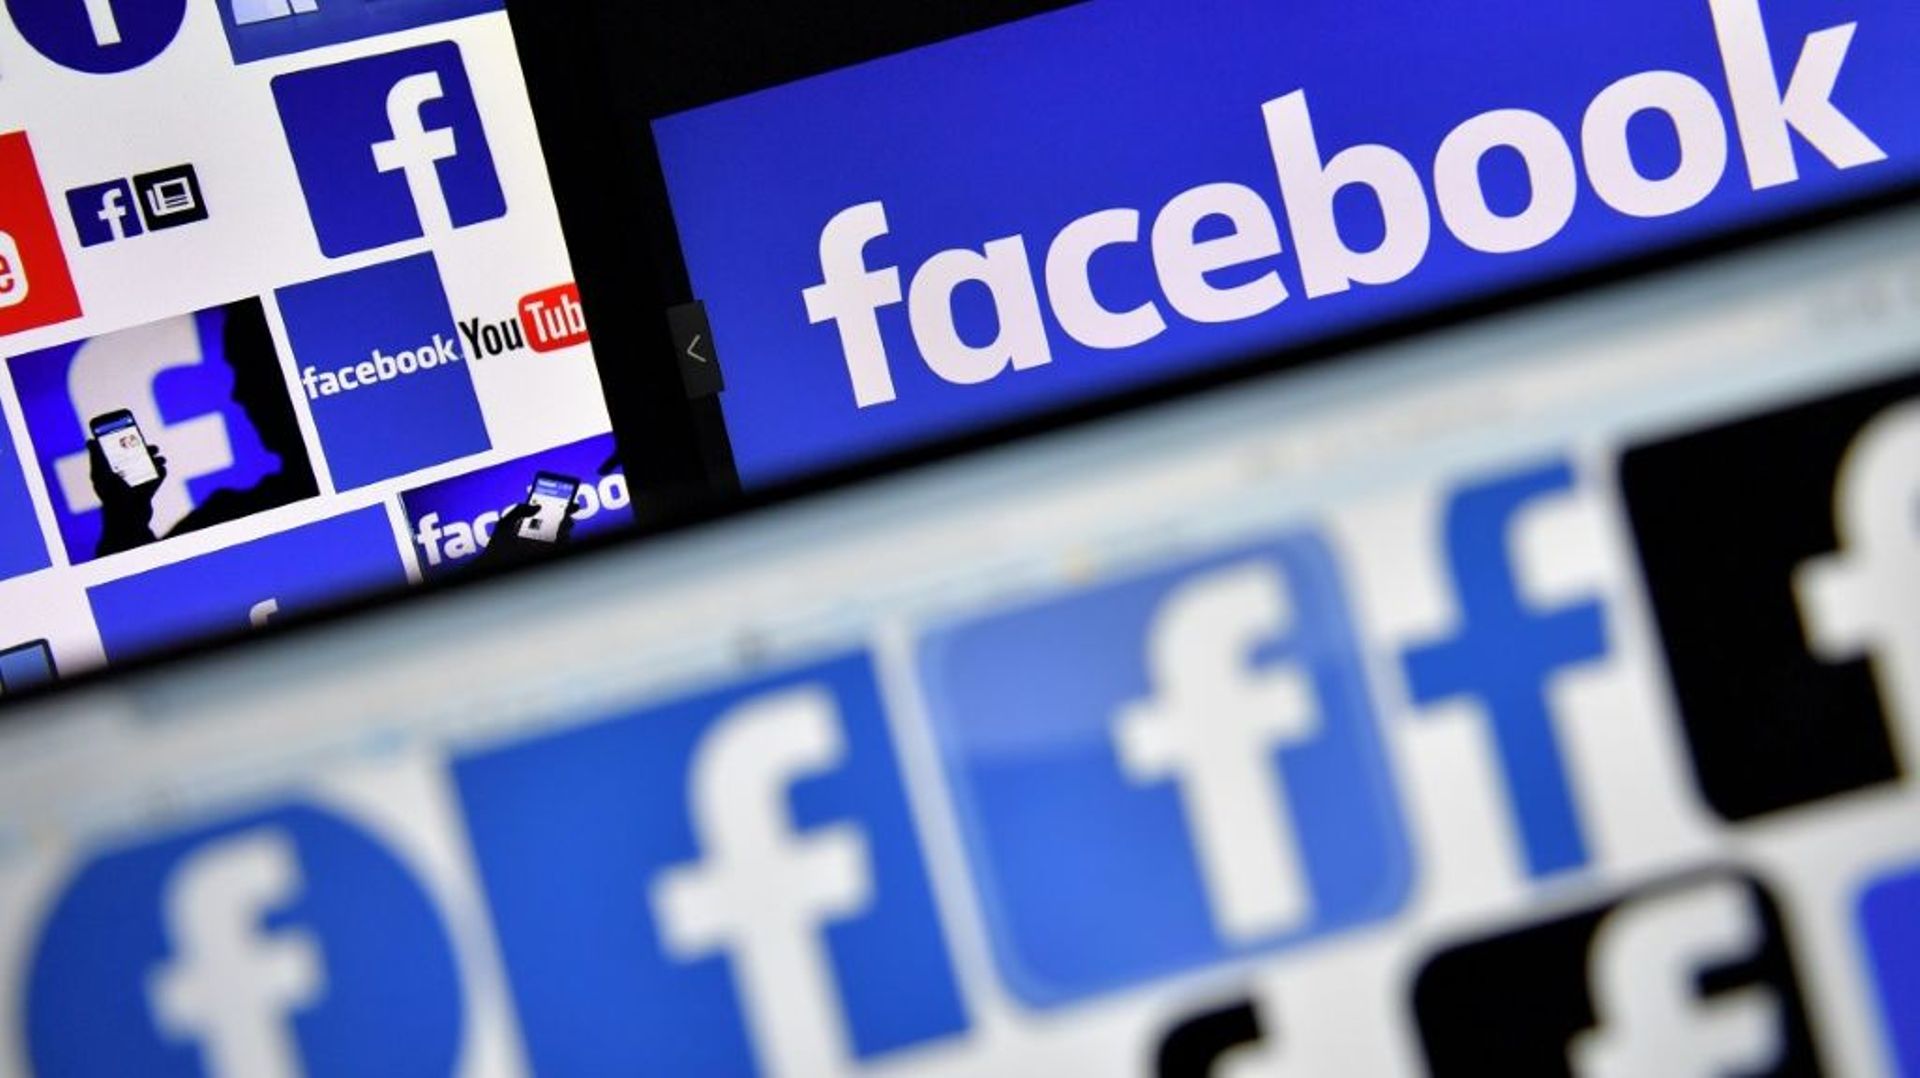 Facebook, englué dans le scandale de la fuite de données personnelles, a annoncé des résultats trimestriels en forte hausse